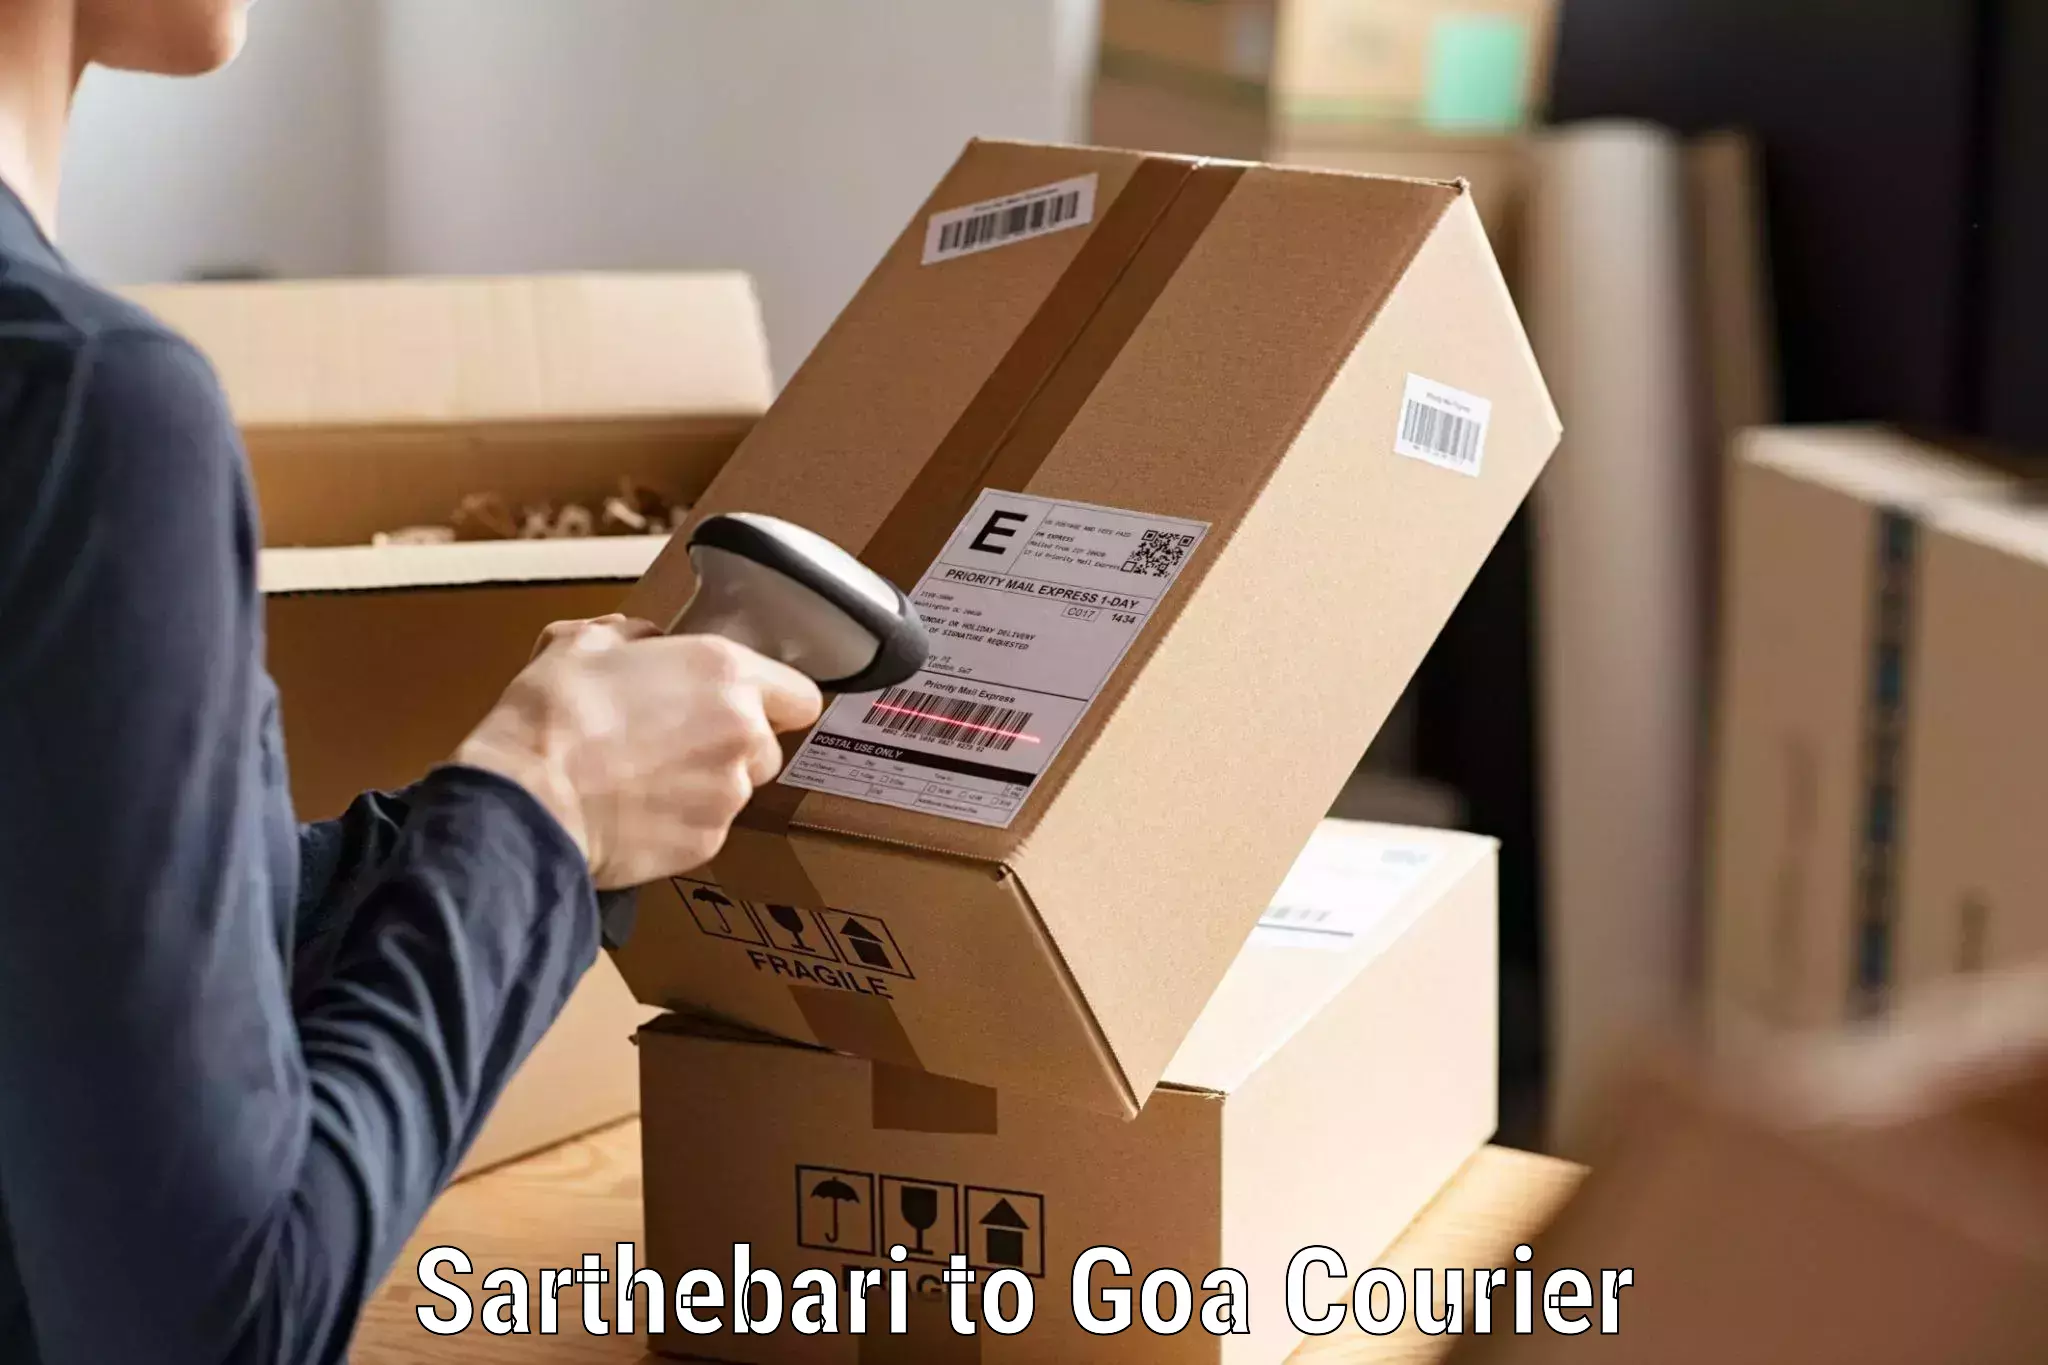 Optimized delivery routes Sarthebari to NIT Goa